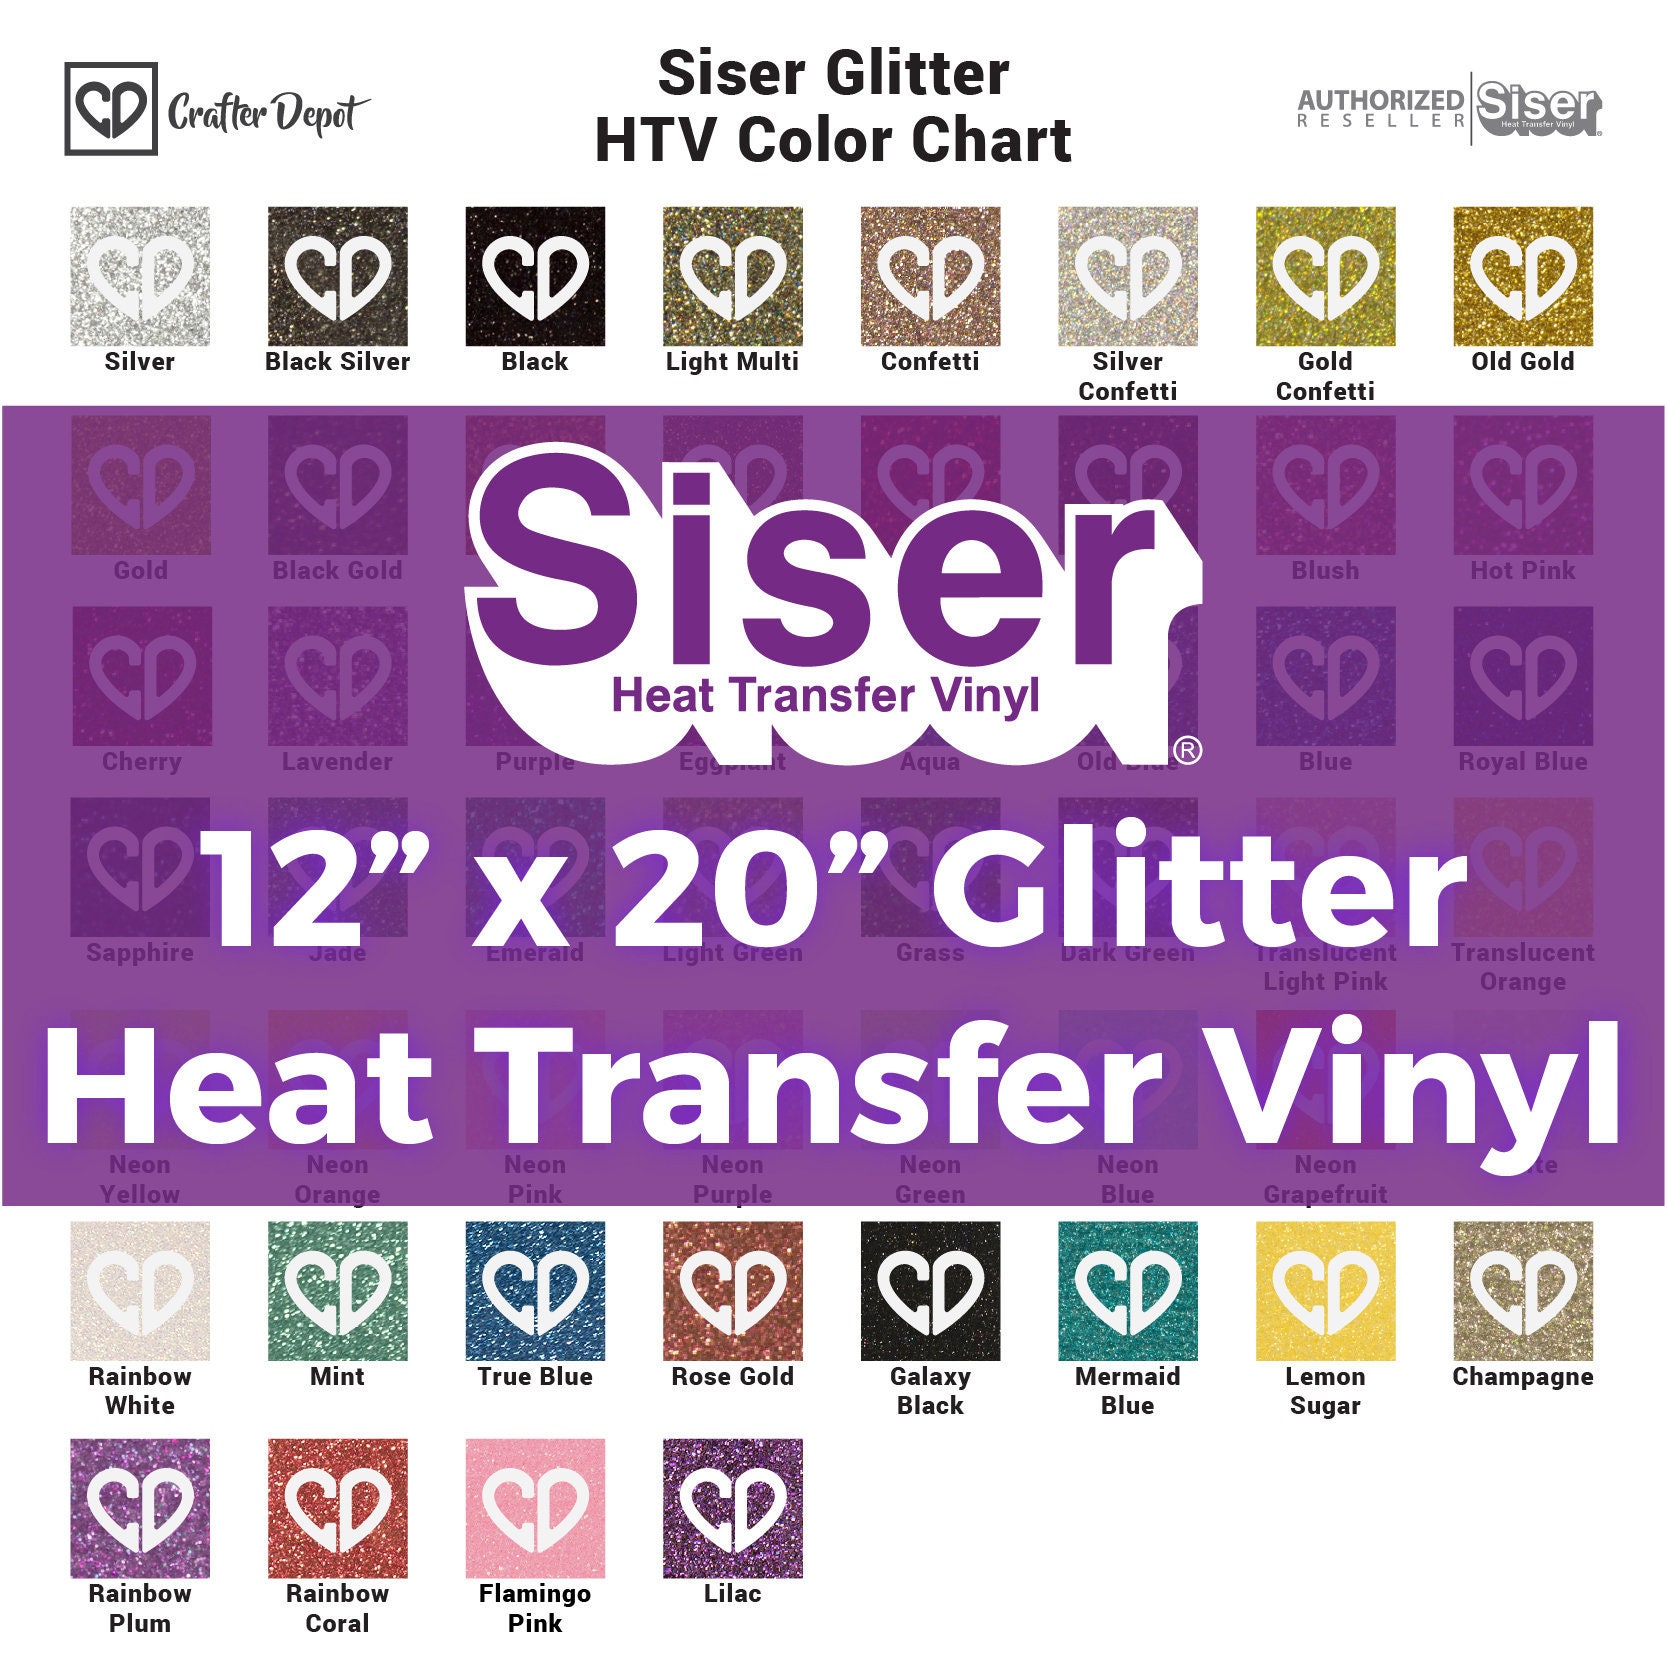 Siser Glitter Heat Transfer Vinyl - Mermaid Blue HTV